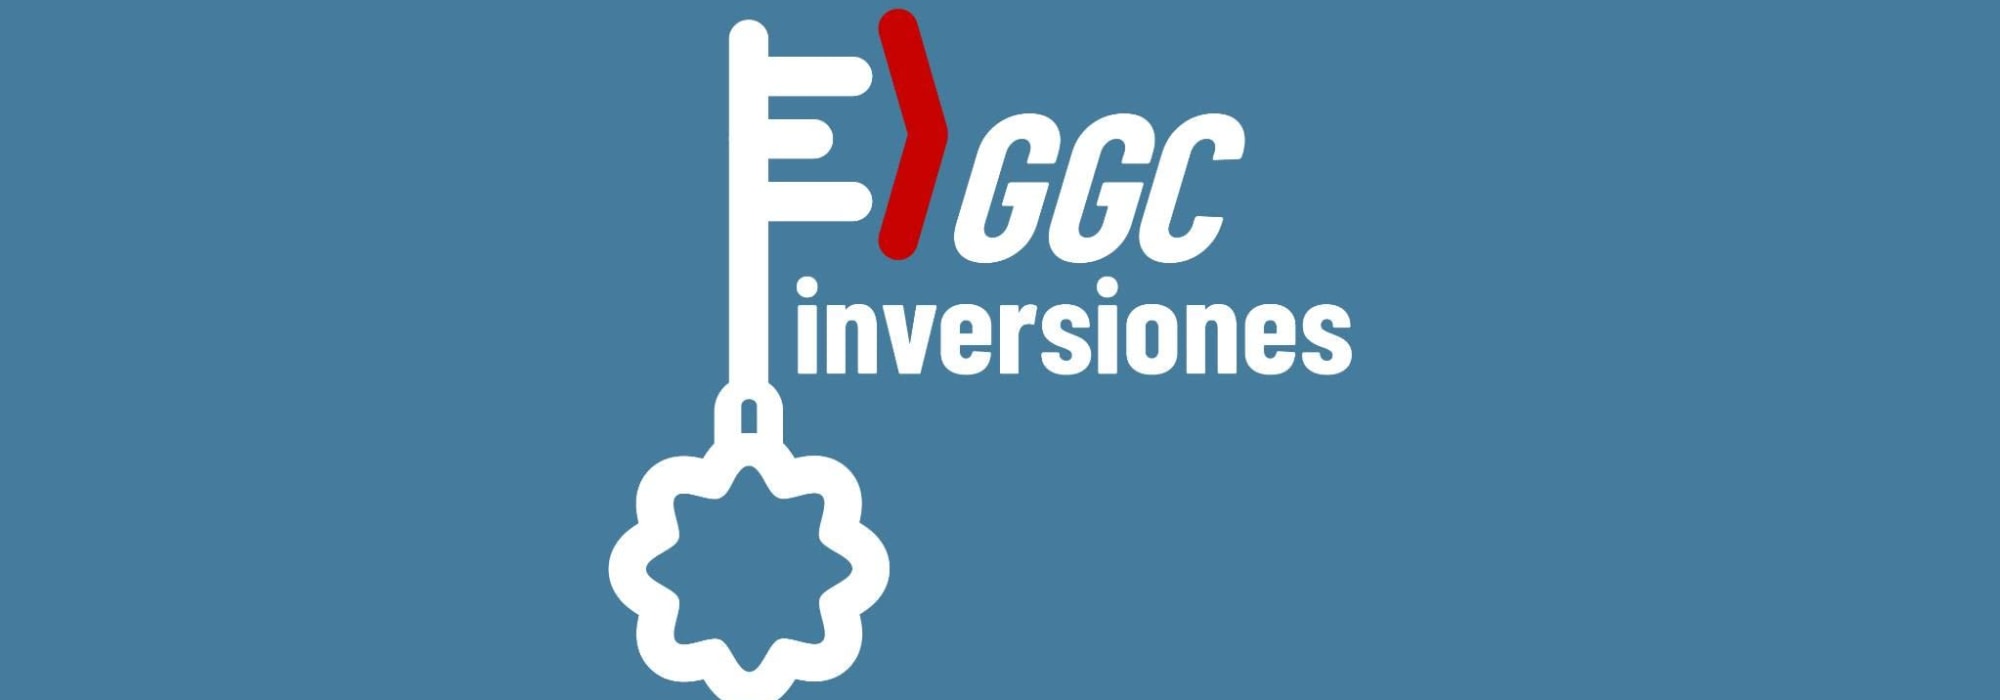 GGC Inversiones